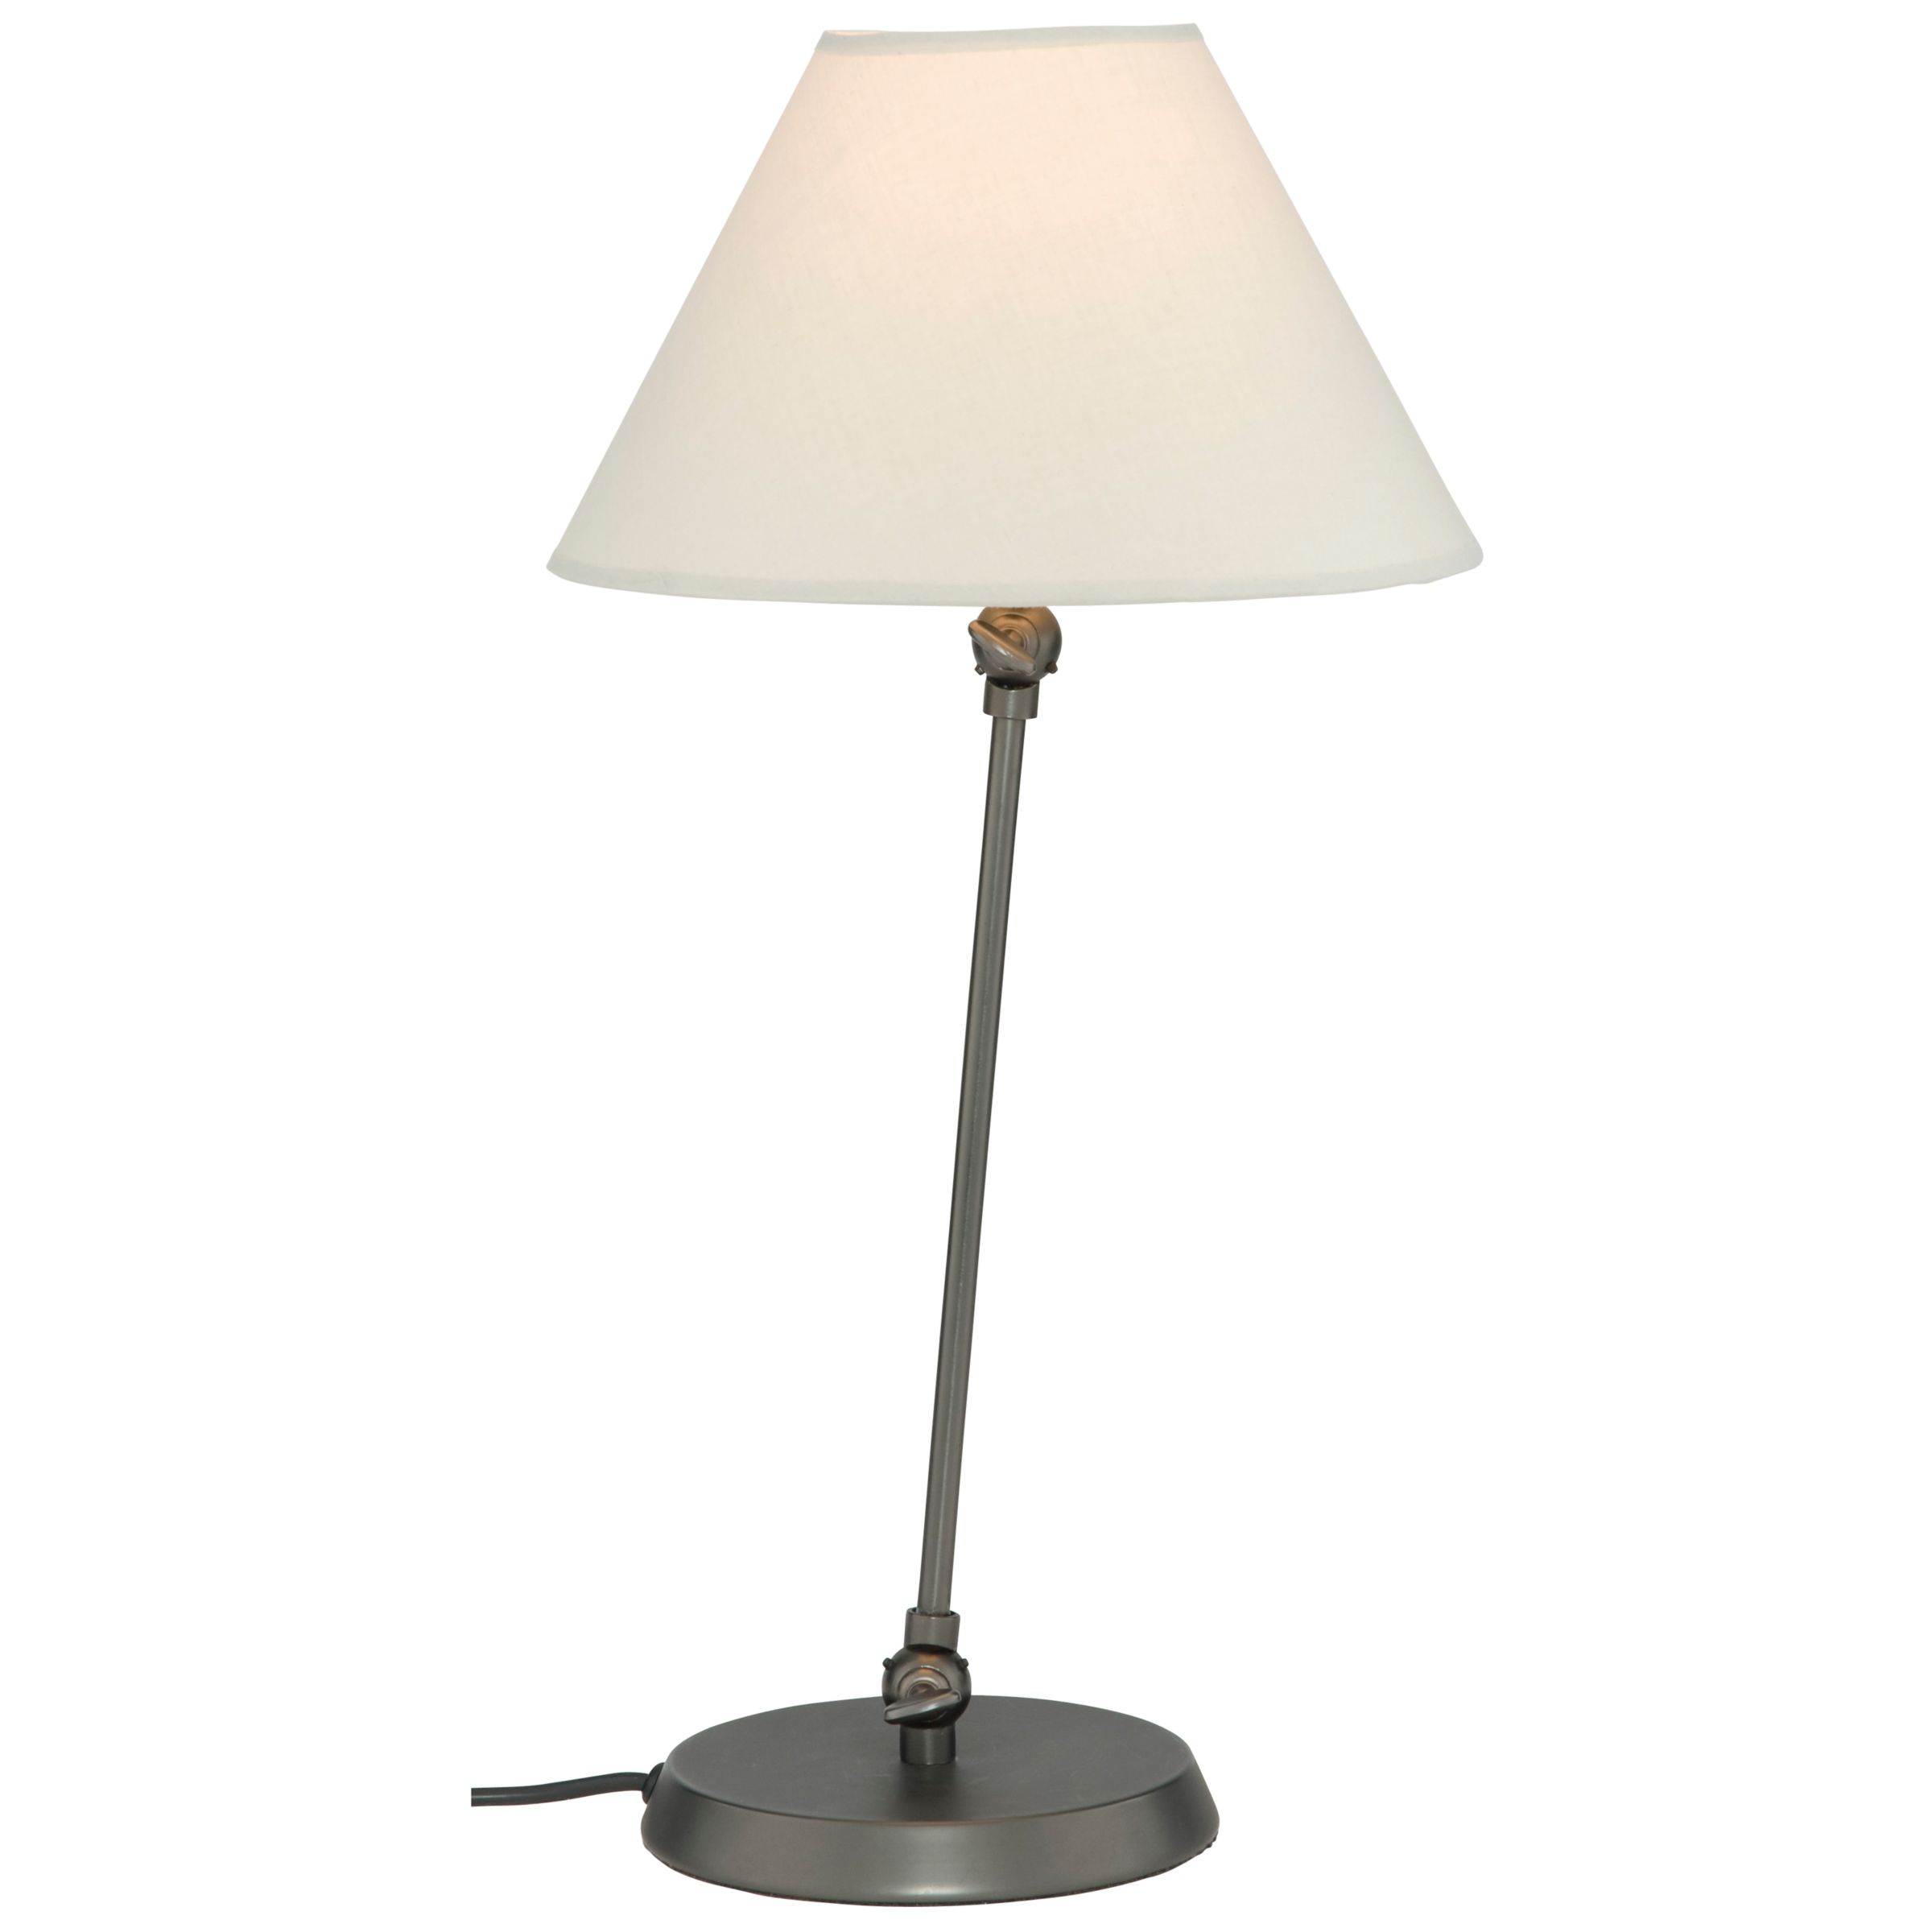 John Lewis Elllis Pivoting Table Lamp